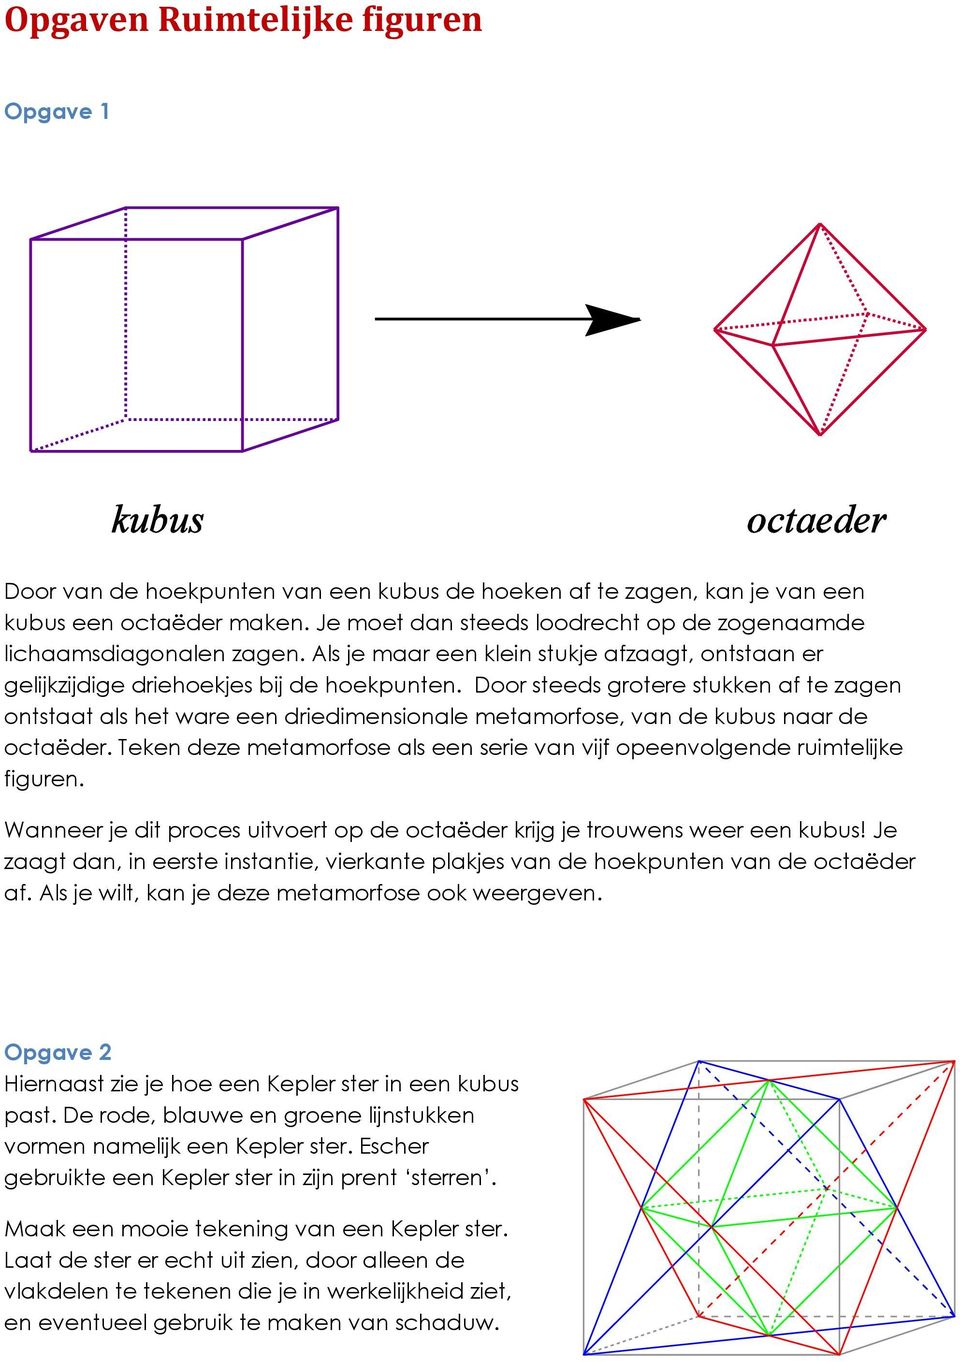 Door steeds grotere stukken af te zagen ontstaat als het ware een driedimensionale metamorfose, van de kubus naar de octaëder.